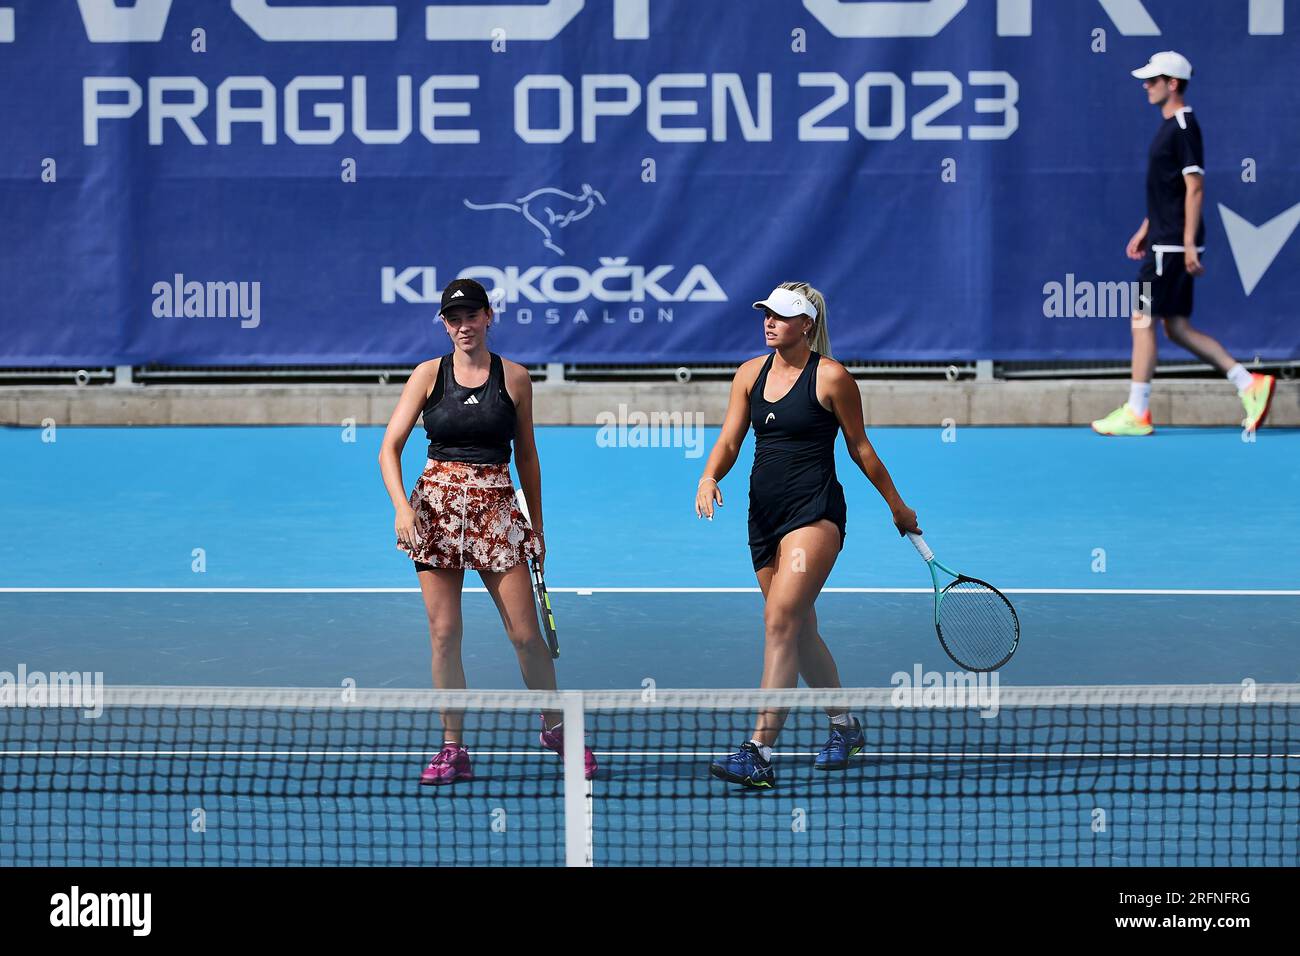 Prague Open 2023